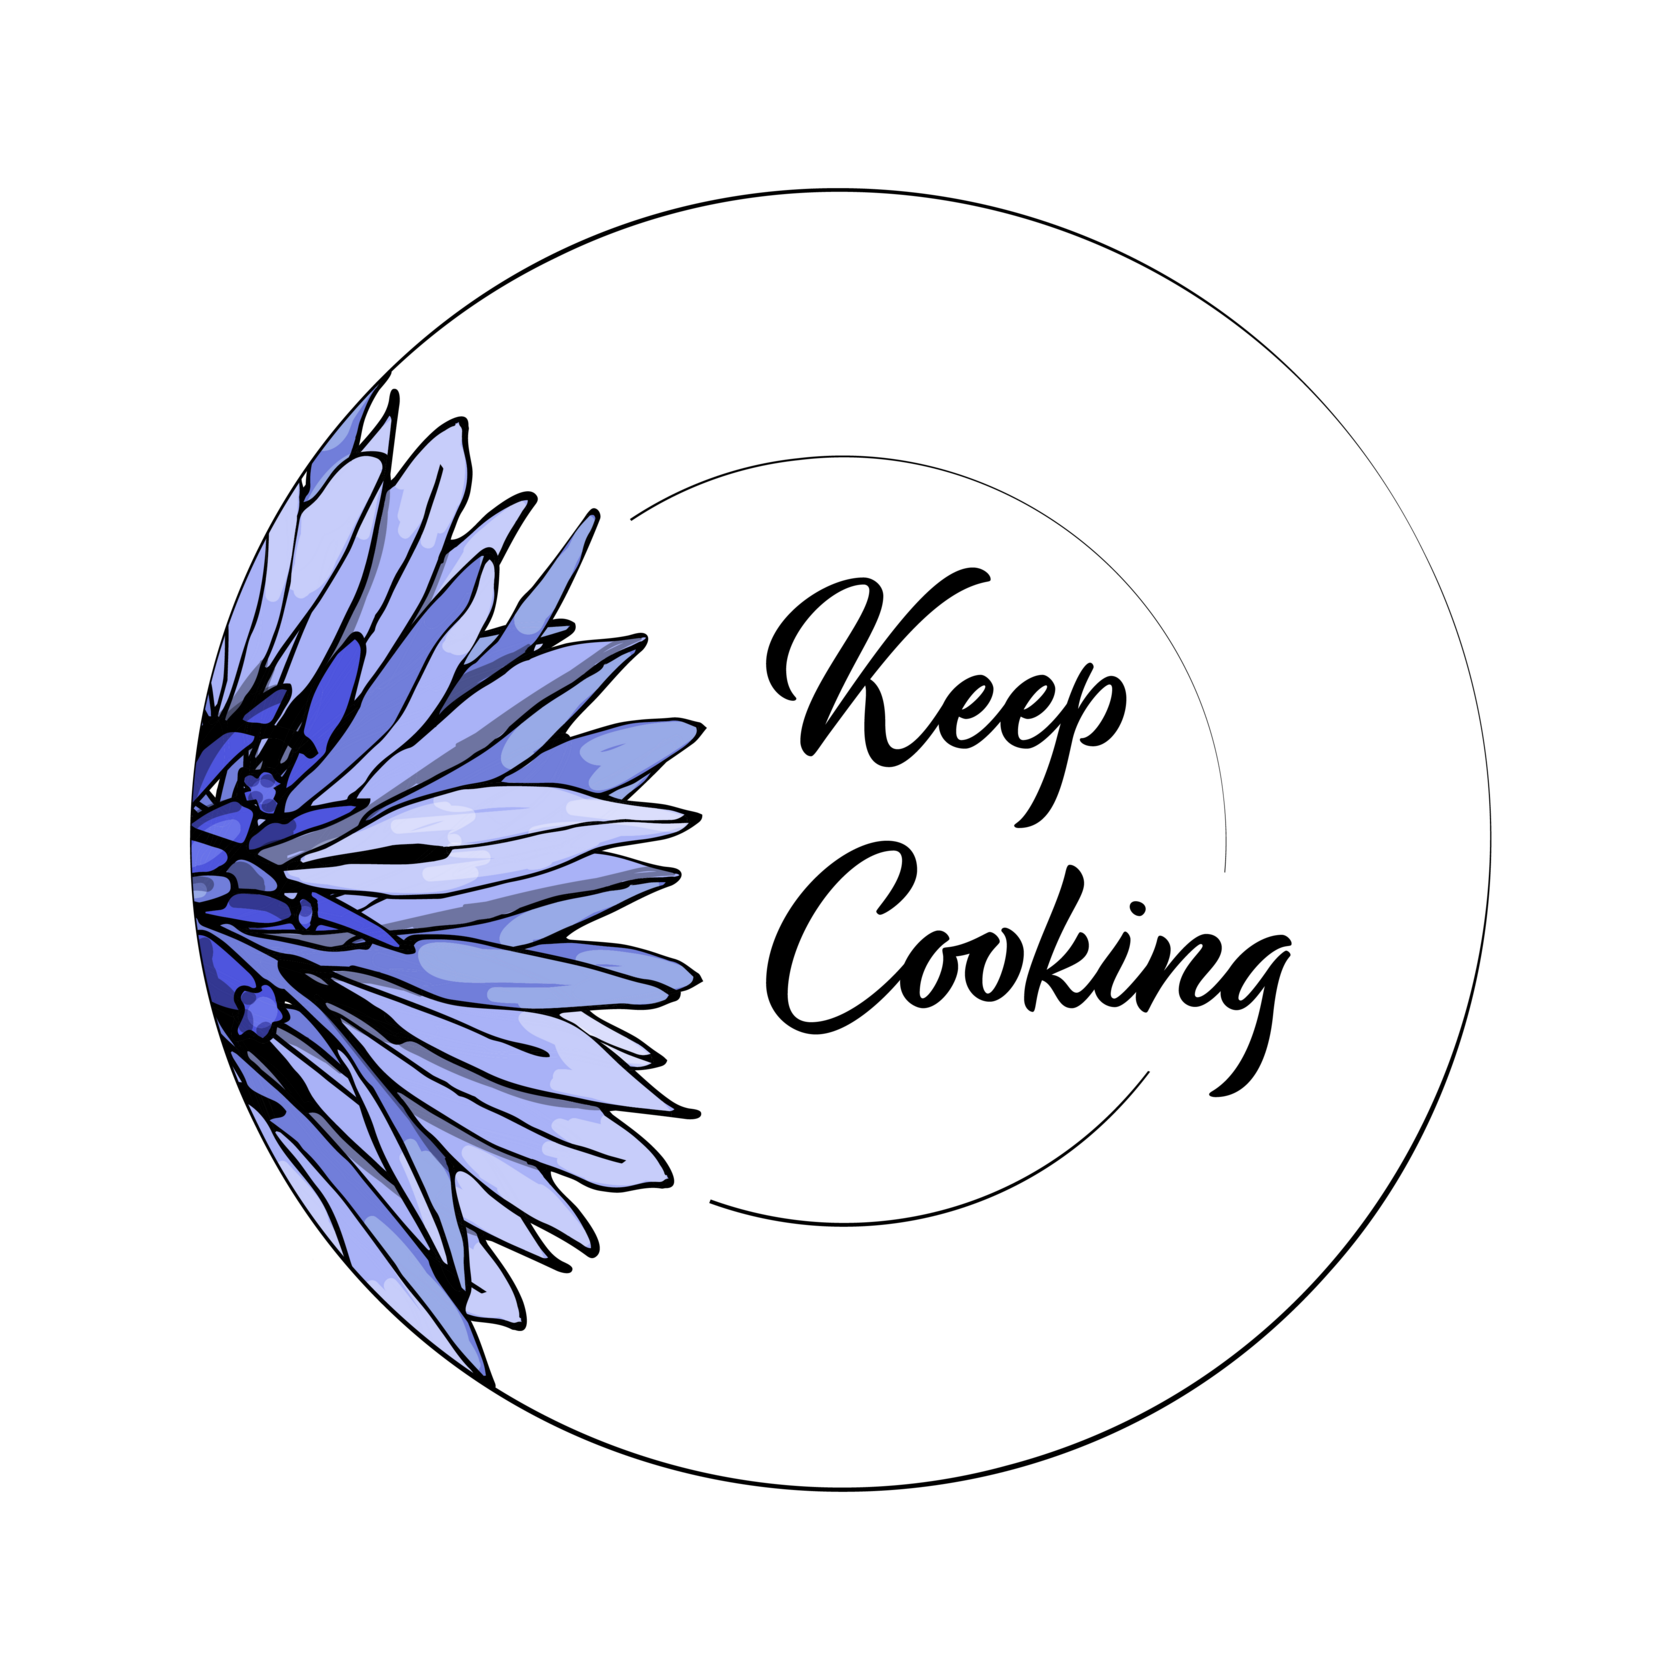 Keep Cooking